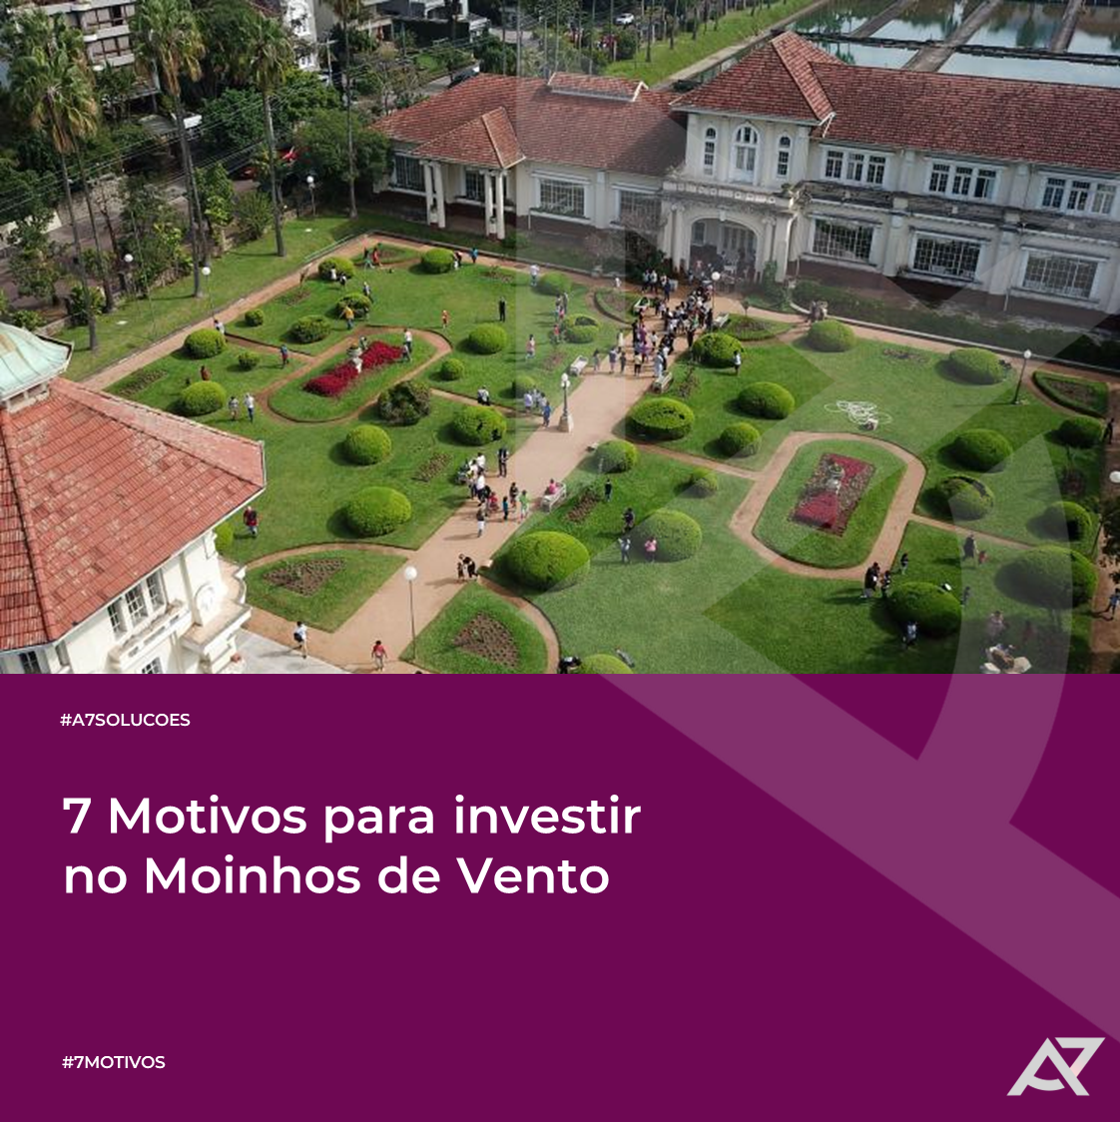 You are currently viewing 7 Motivos para investir no Moinhos de Vento